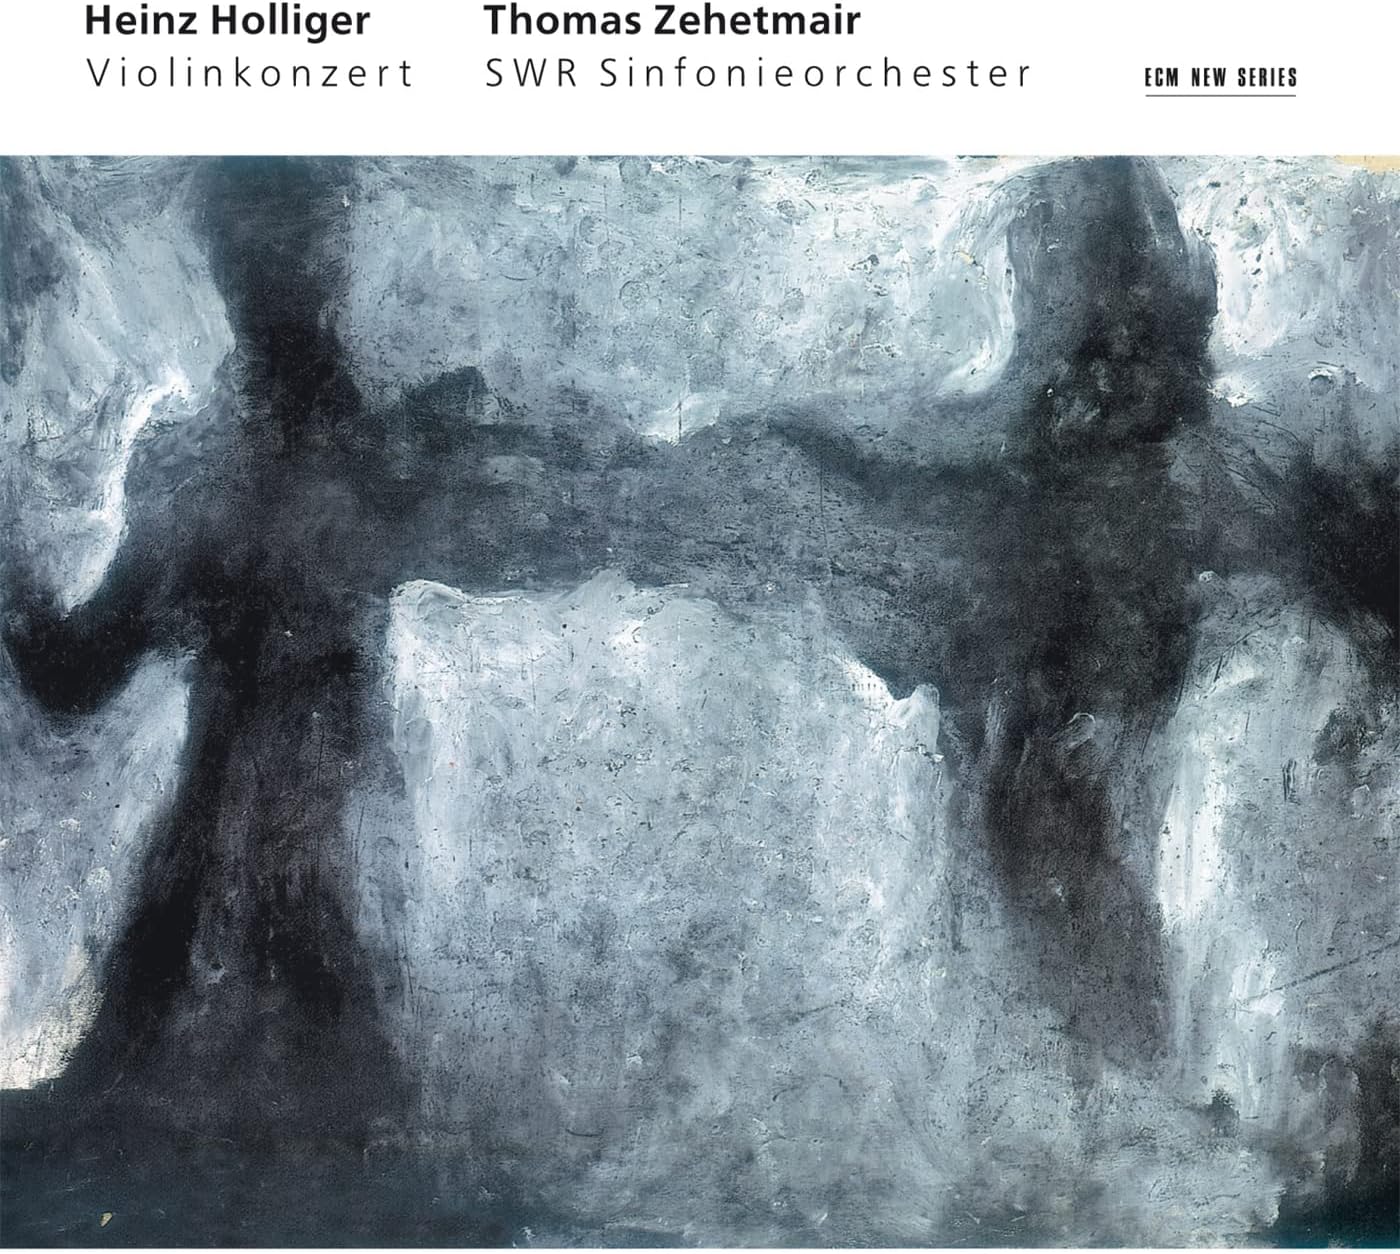 Heinz Holliger: Violinkonzert | Thomas Zehetmair, SWR Sinfonieorchester